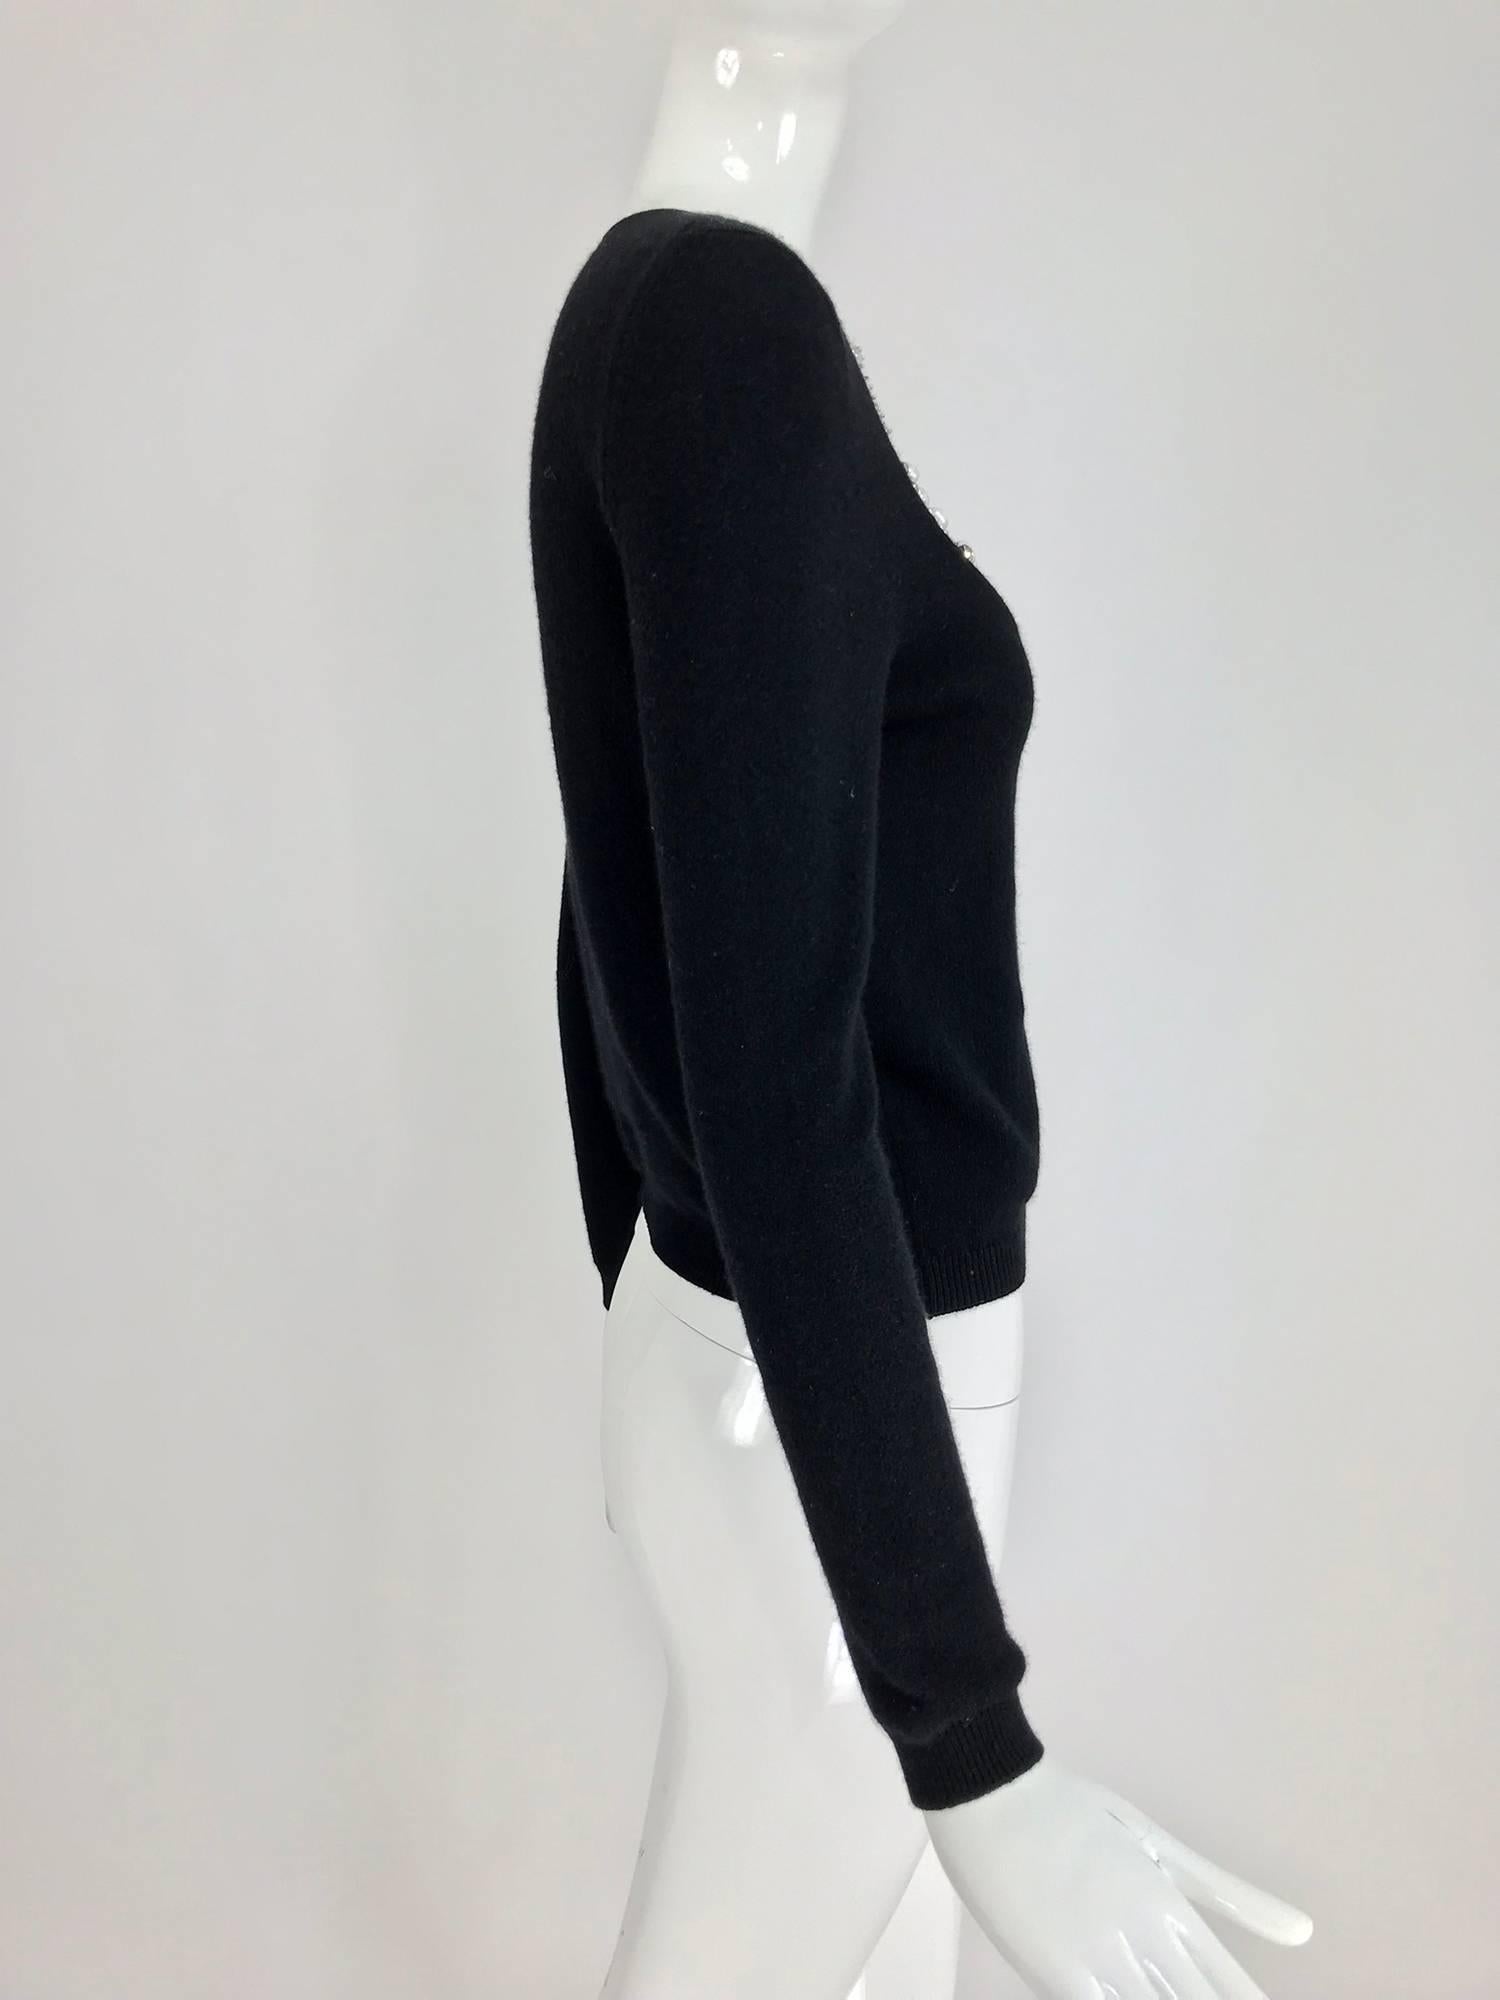 Women's Oscar de la Renta jewel decorated neckline black sweater